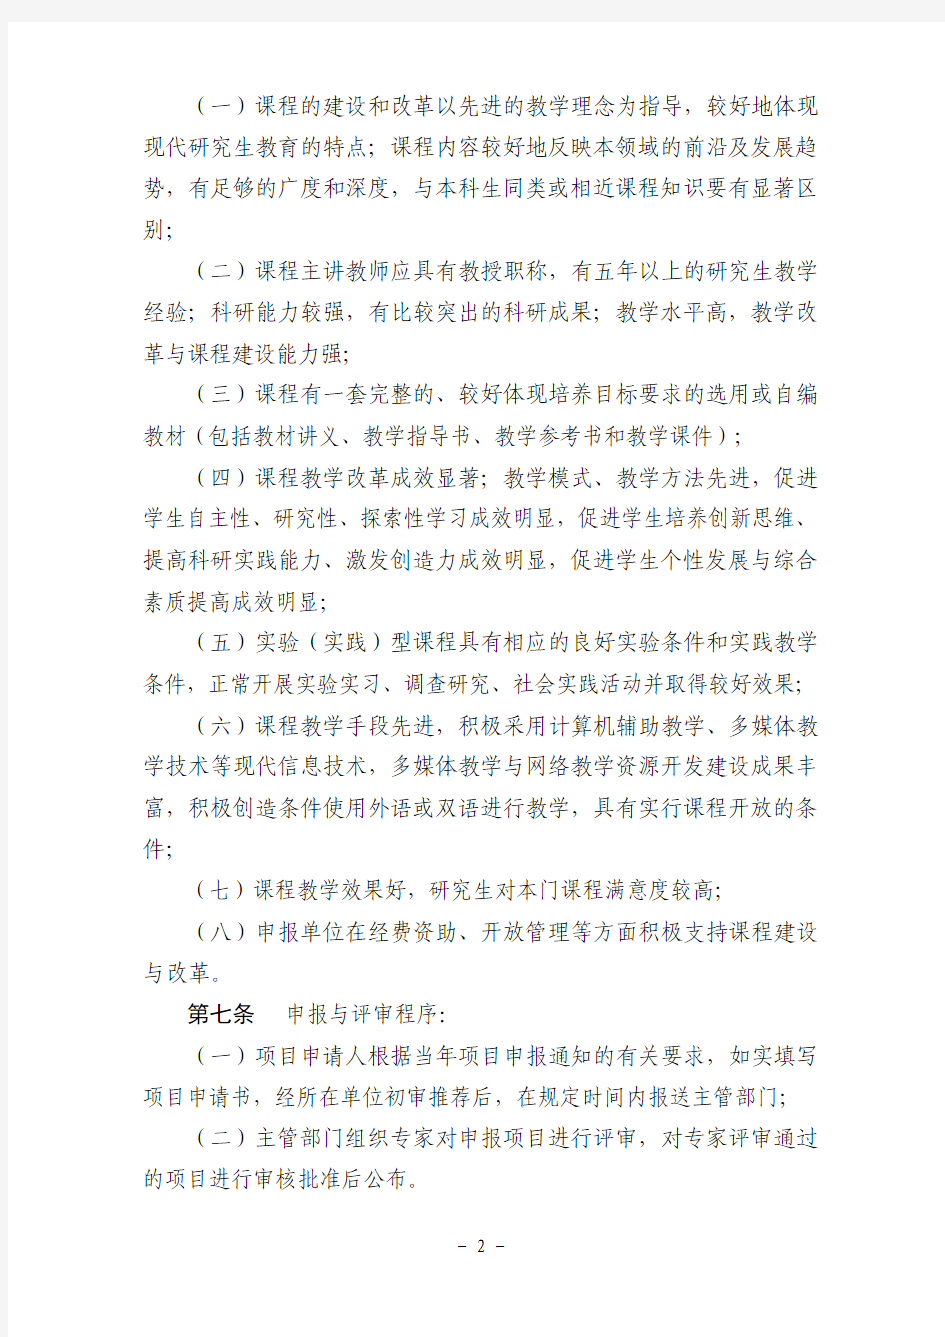 广东省研究生示范课程建设项目实施管理暂行办法